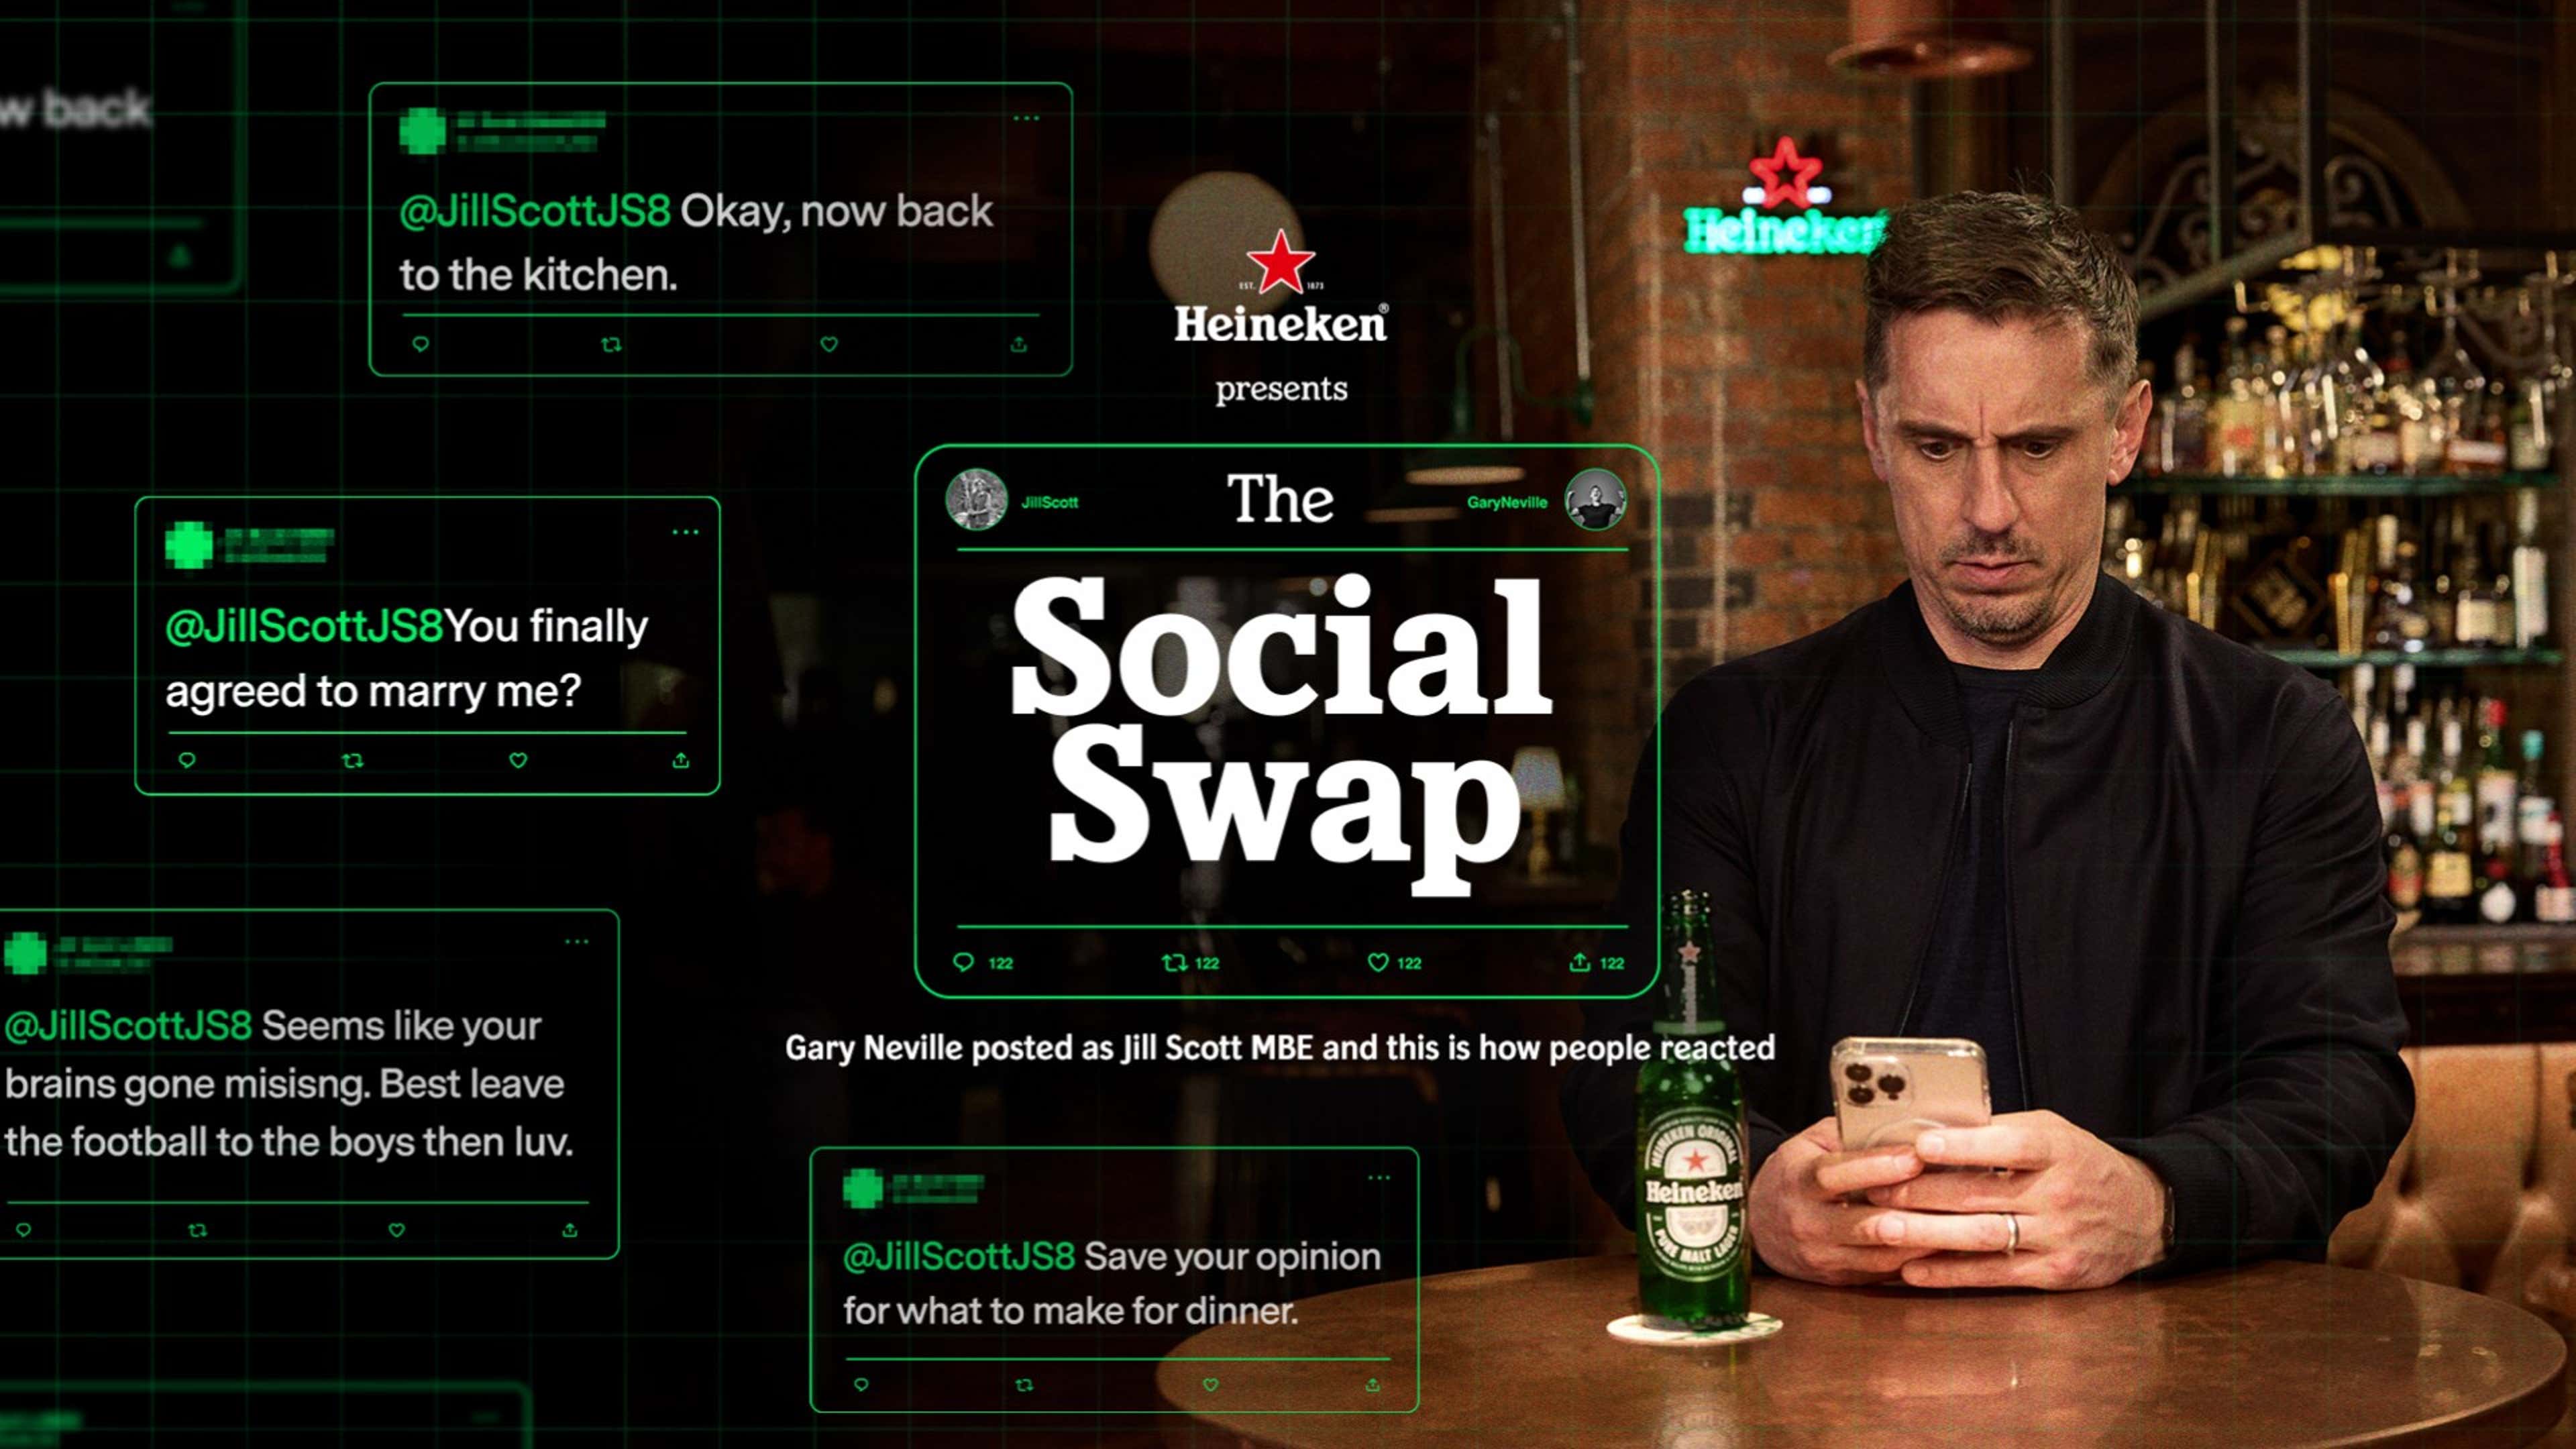 Gary Neville Social Swap Heineken